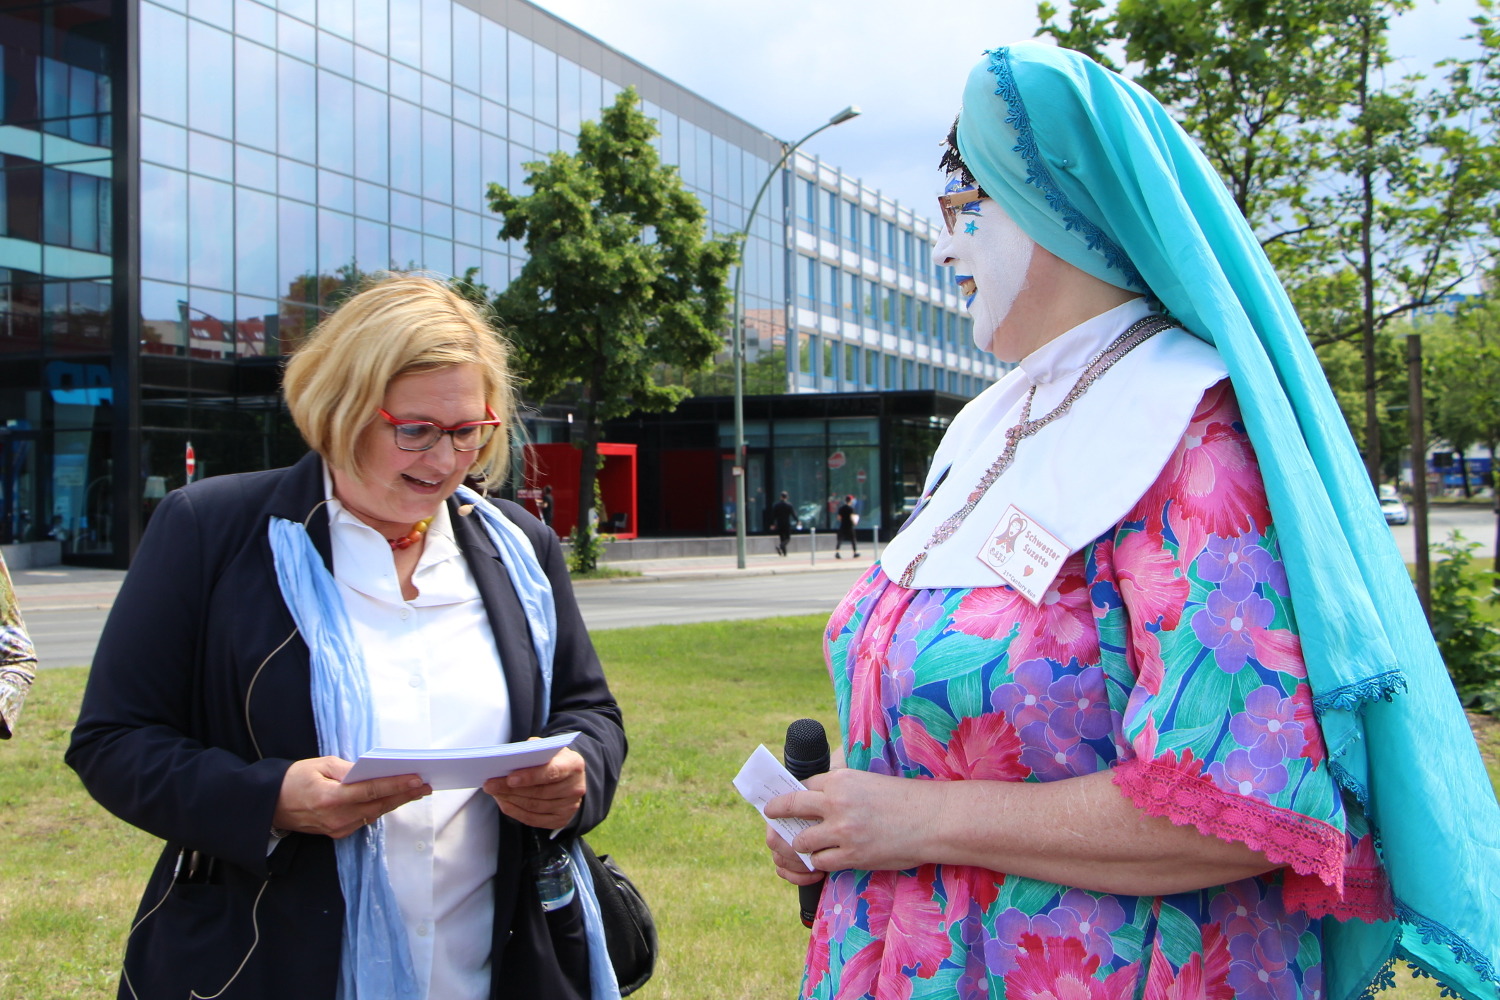 Links eine Frau schaut auf ihre Notizen, rechts eine bunt gekleidete Frau mit einem türkisen Kopftuch wie bei einer Nonne mit weiß bemaltem Gesicht